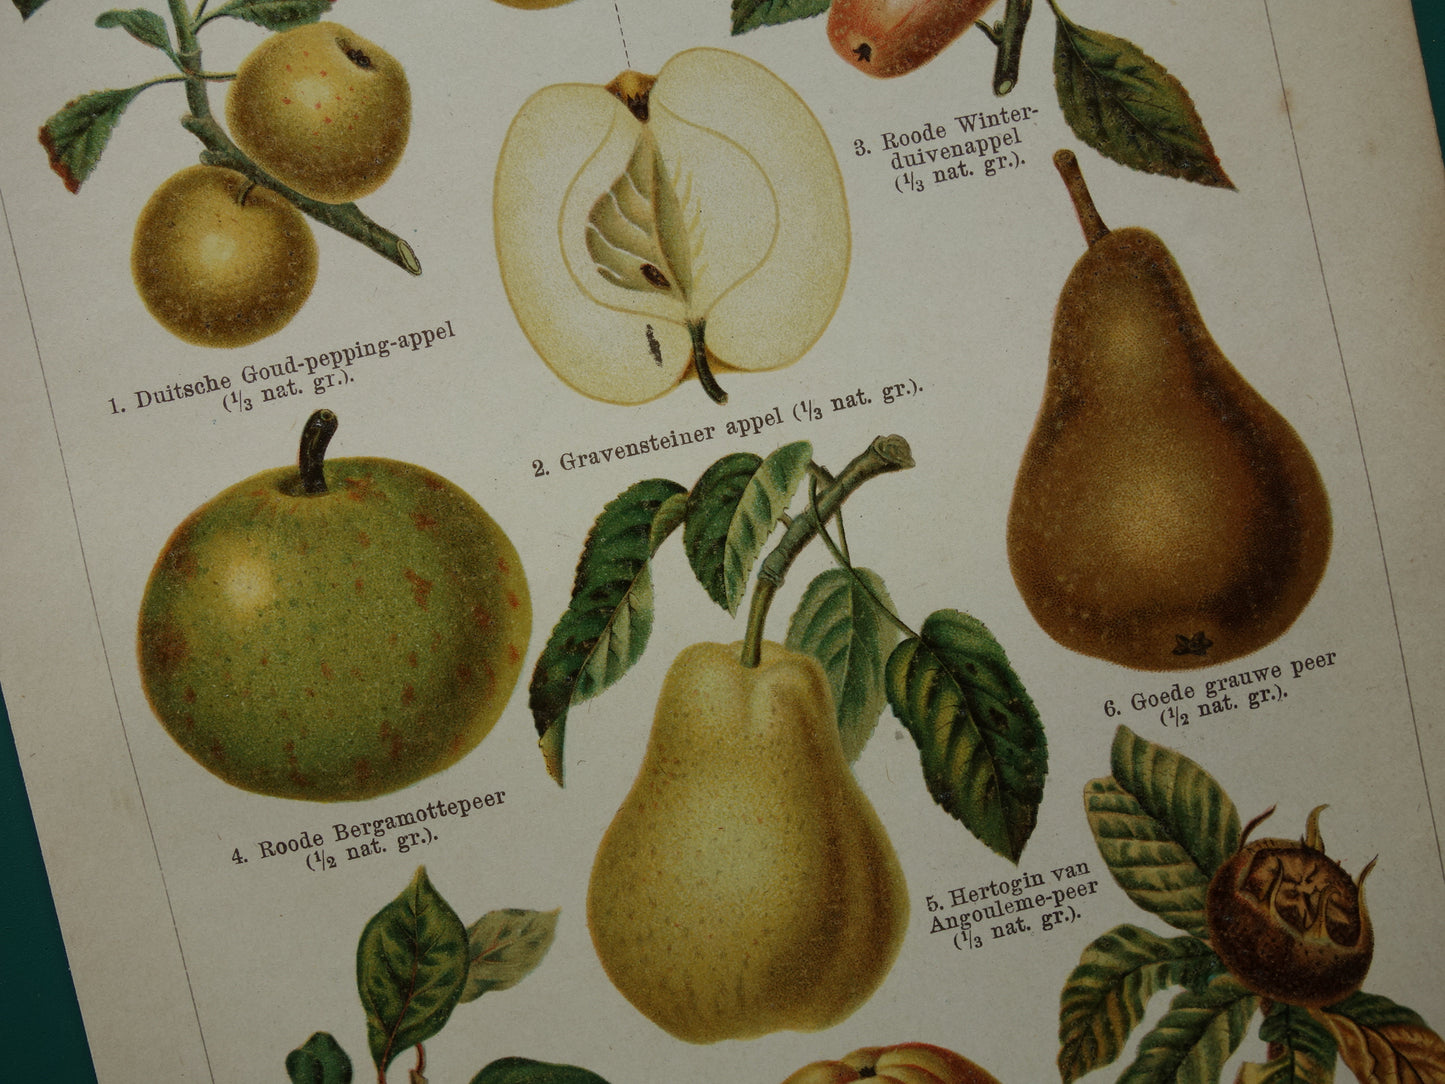 historische afbeeldingen van appels en peren